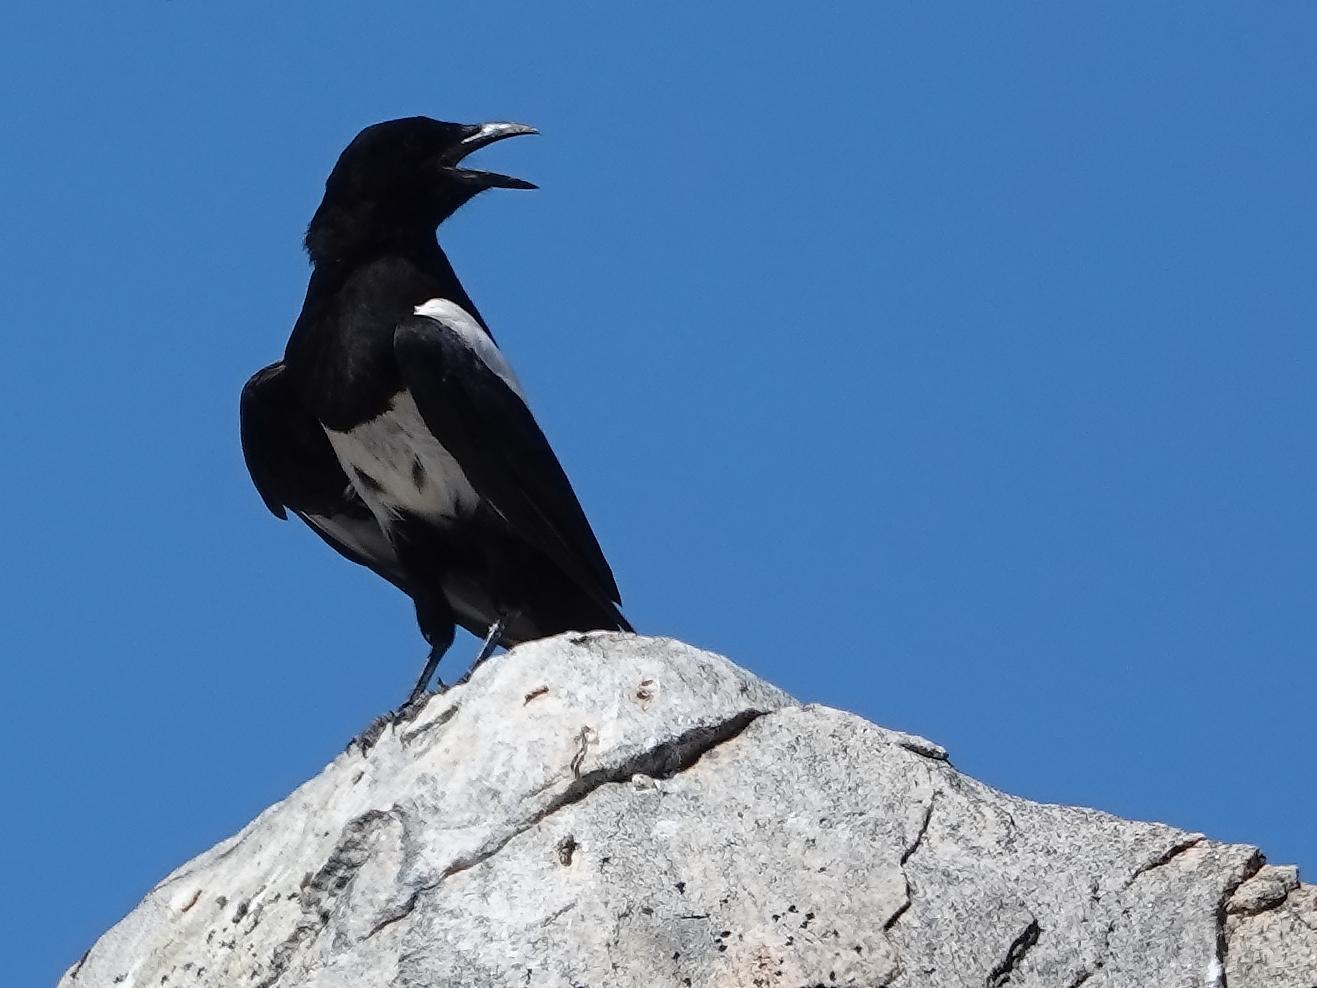 Black-billed Magpie Photo by Kent Jensen